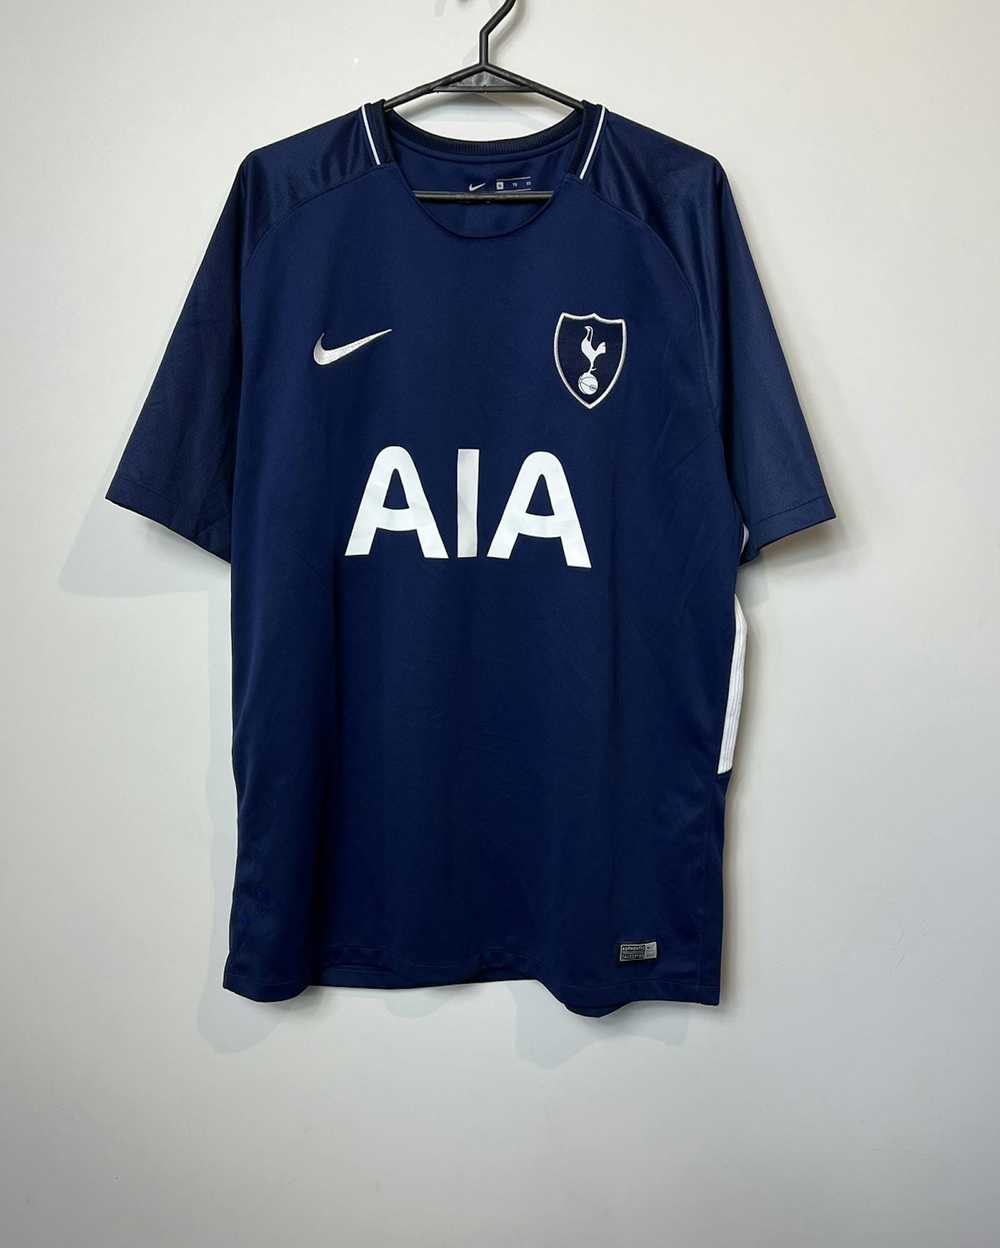 Nike Tshirt Nike Tottenham 2017/2018 football - image 1